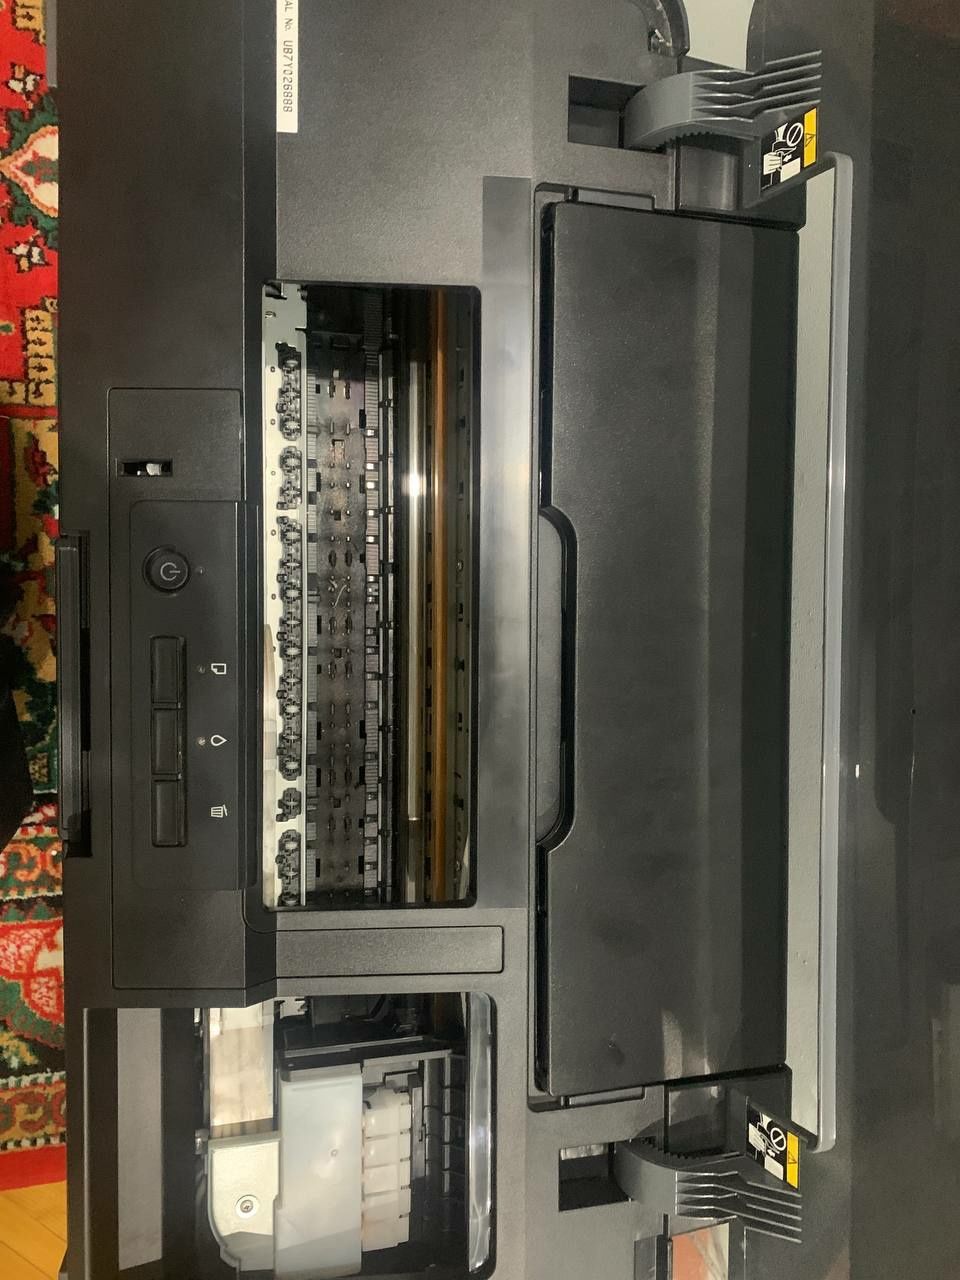 A3+ printer Epson L1300